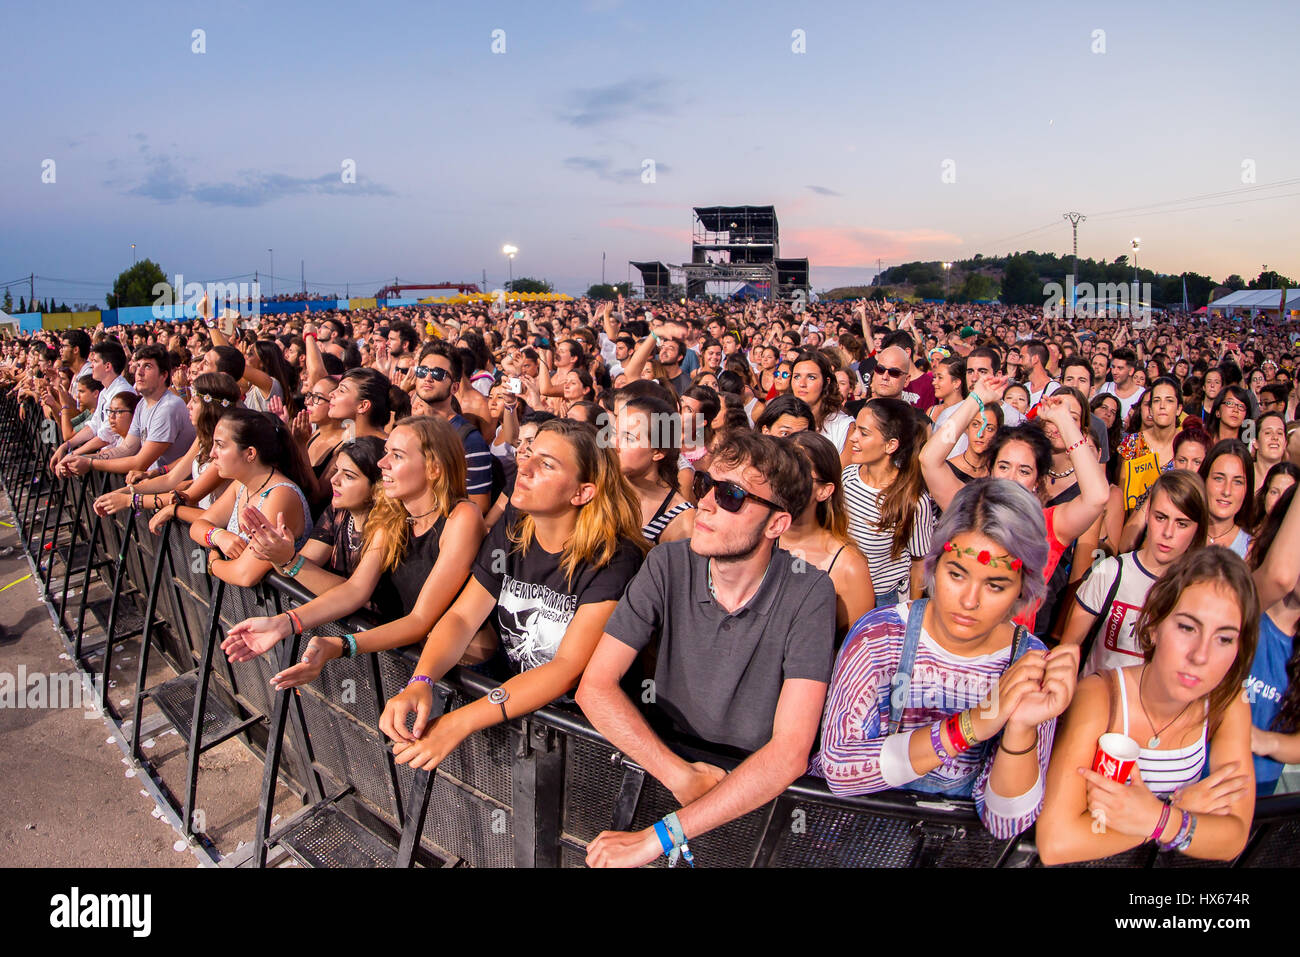 BENICASSIM, ESPAGNE - Juillet 19 : foule lors d'un concert au Festival de Musique le 19 juillet 2015 à Benicassim, Espagne. Banque D'Images